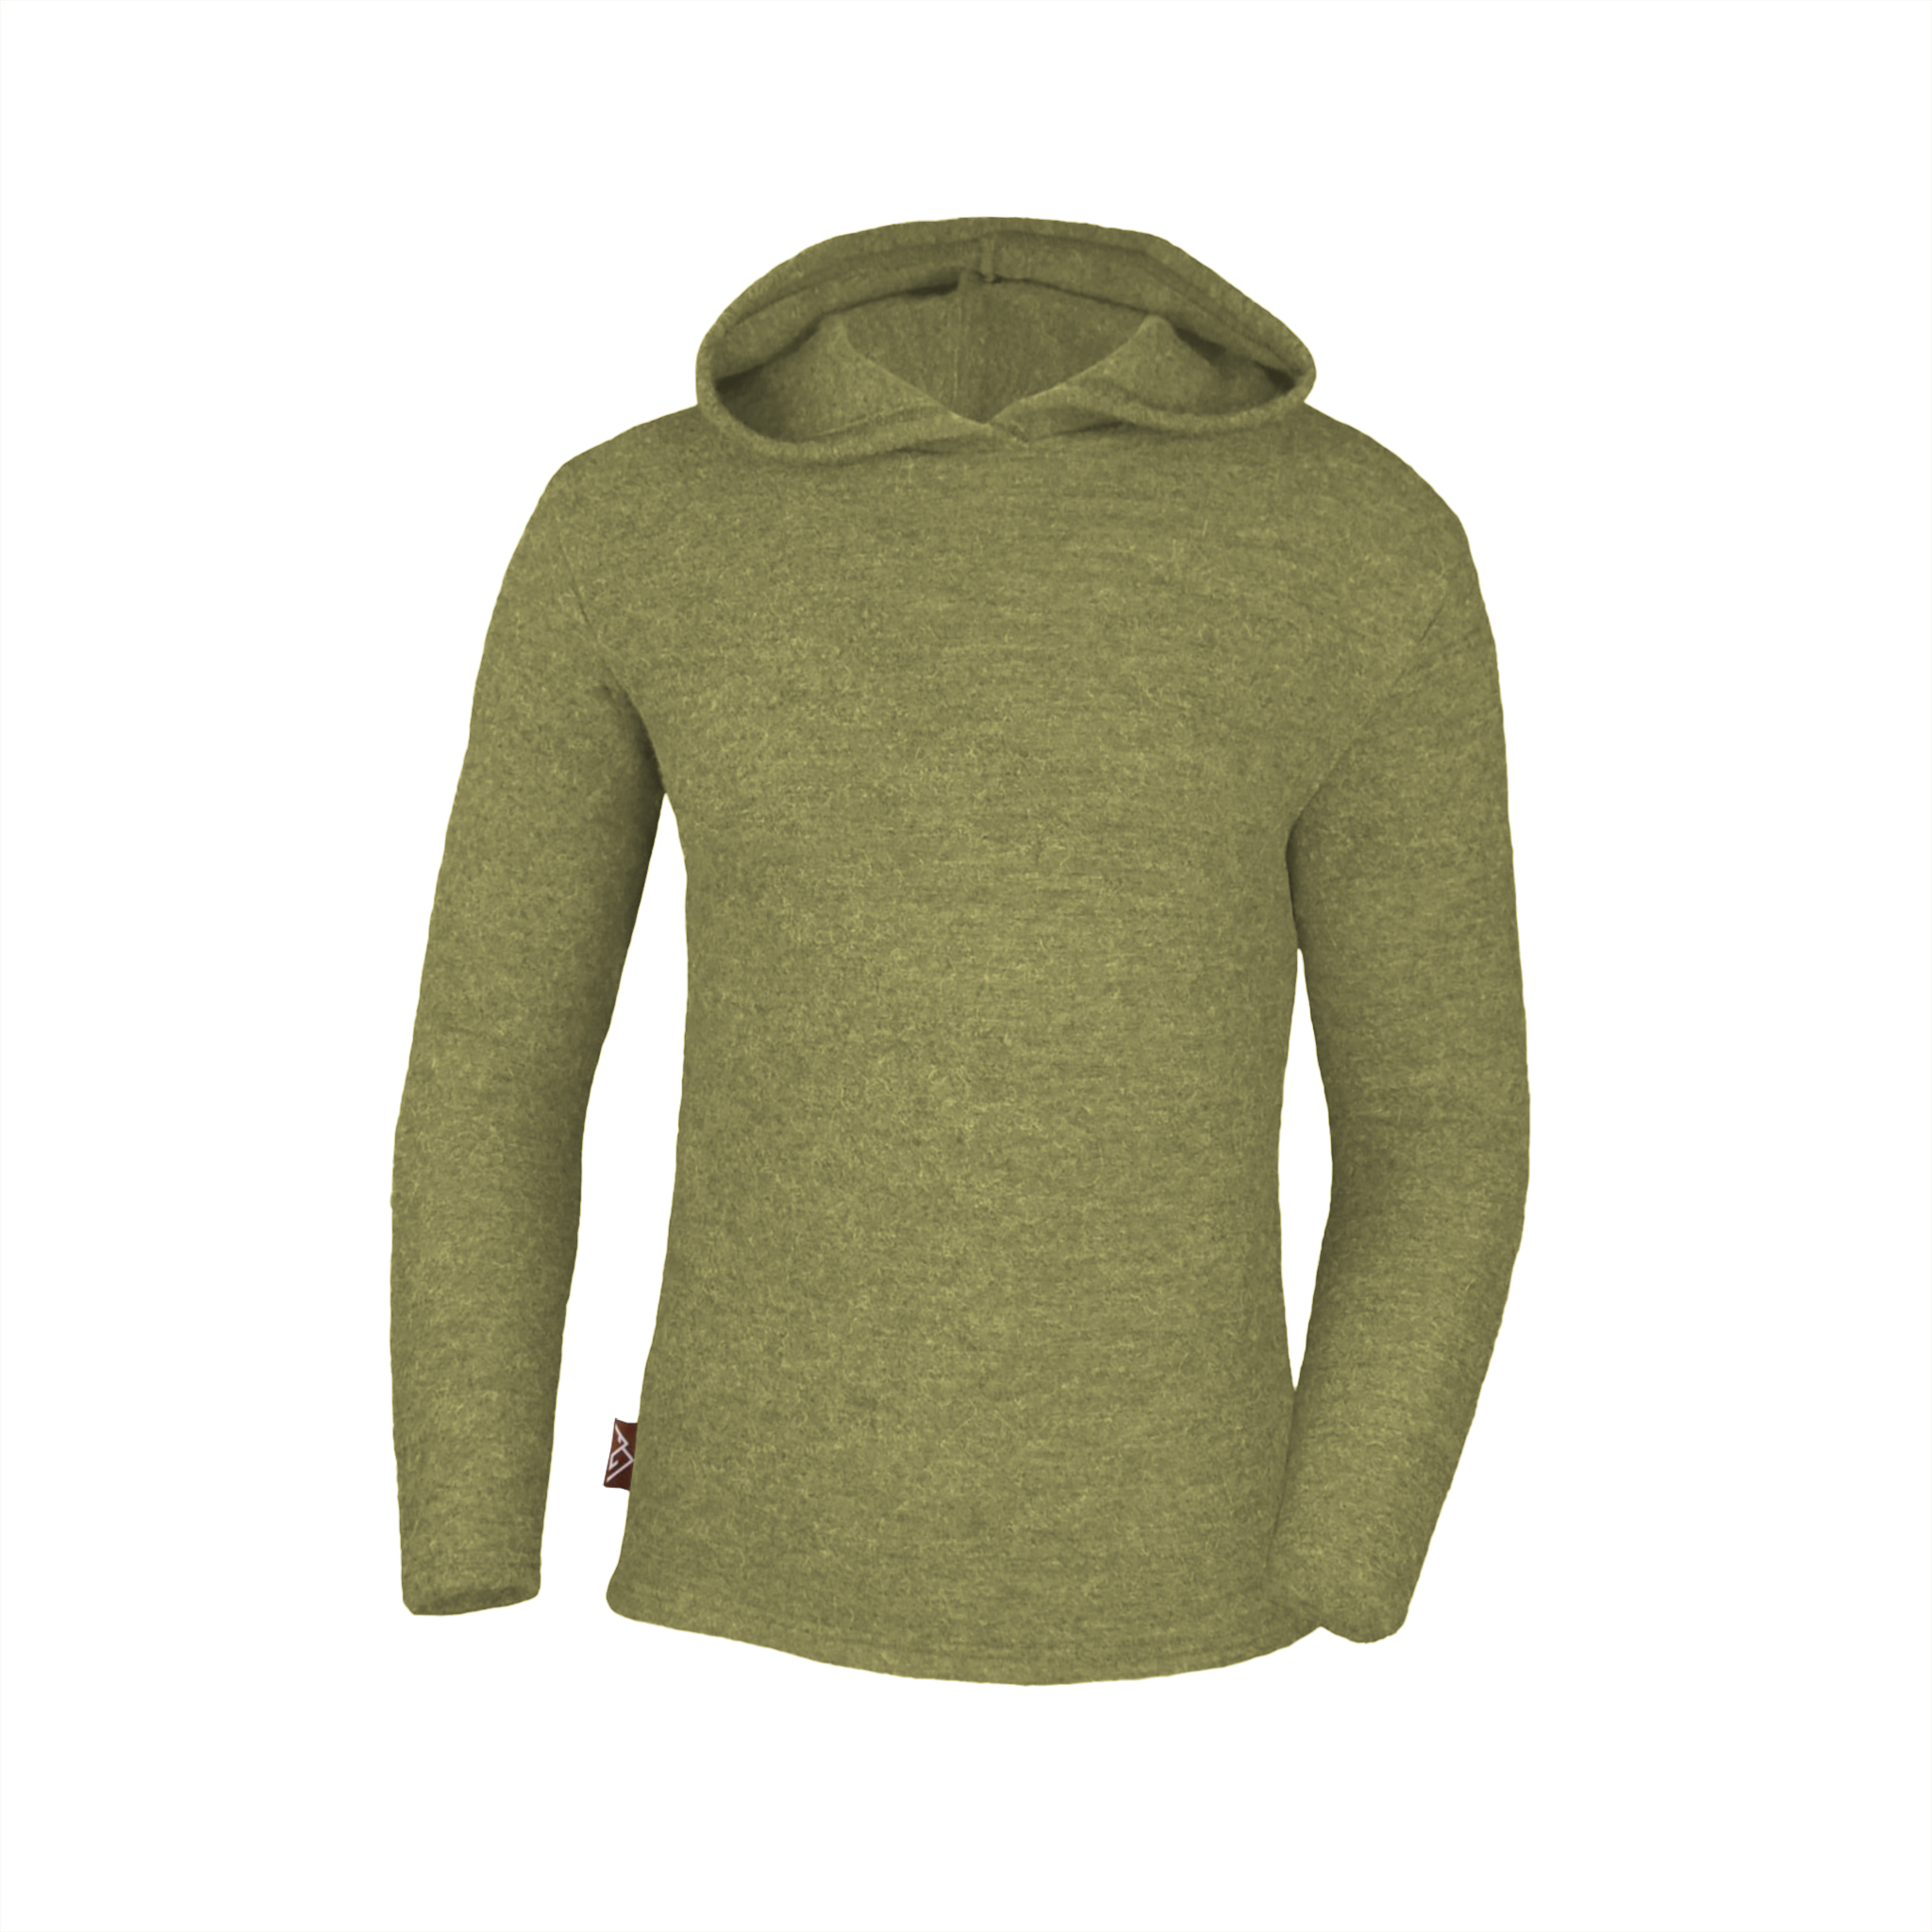 Womens/Ladies Hooded Sweatshirt (XXL) (Leaf Green)